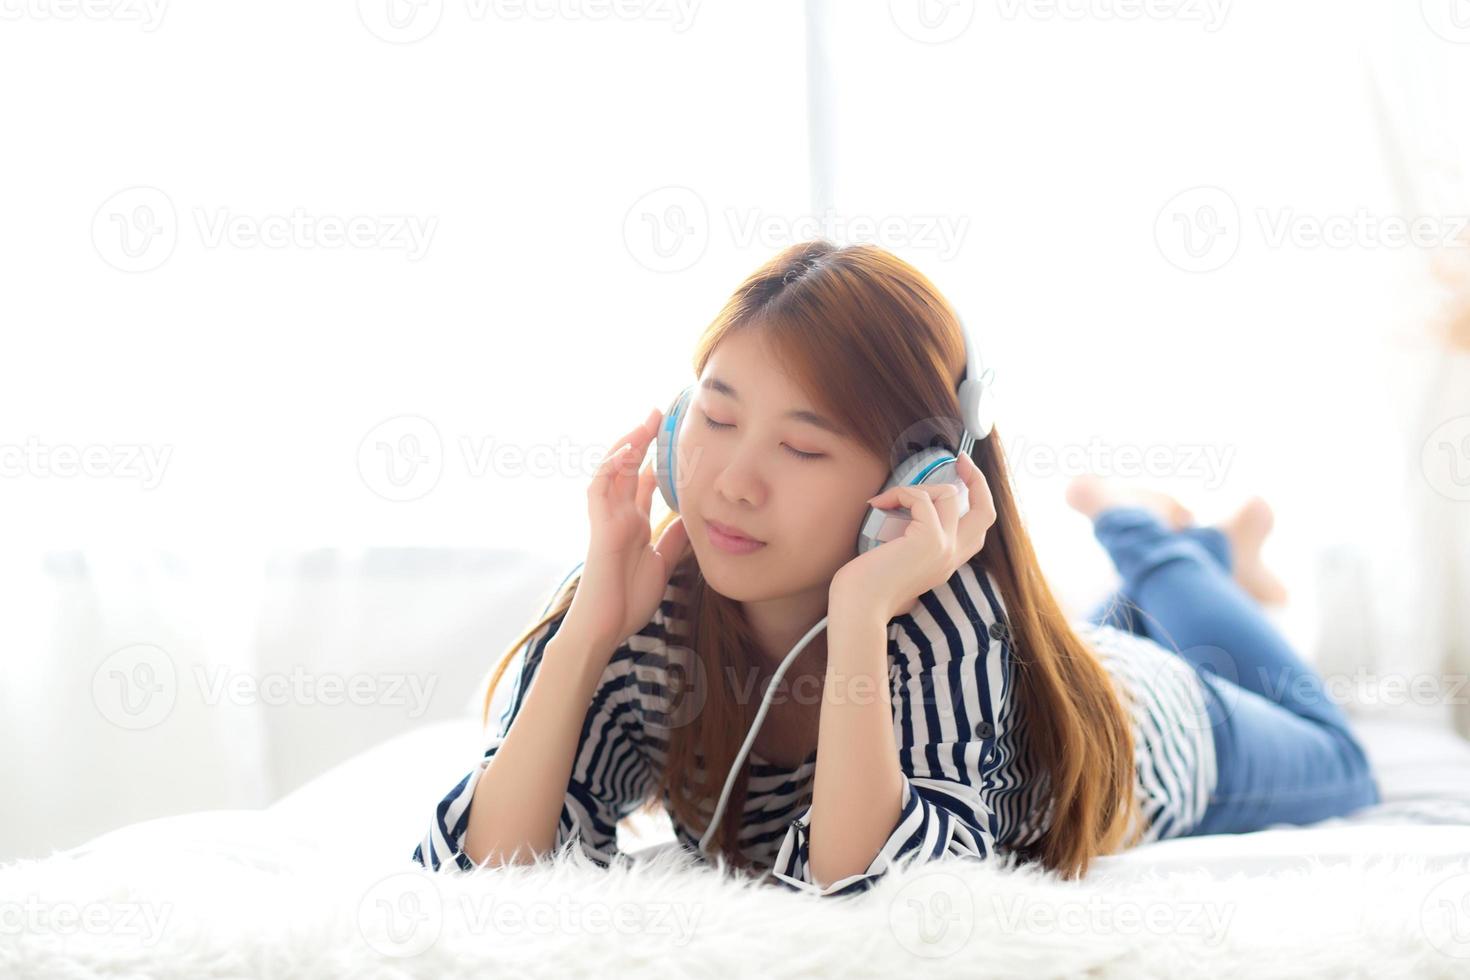 la bella giovane donna asiatica si diverte e si diverte ad ascoltare musica con le cuffie che si trovano in camera da letto, la ragazza si rilassa con il concetto di auricolare, tempo libero e tecnologia. foto